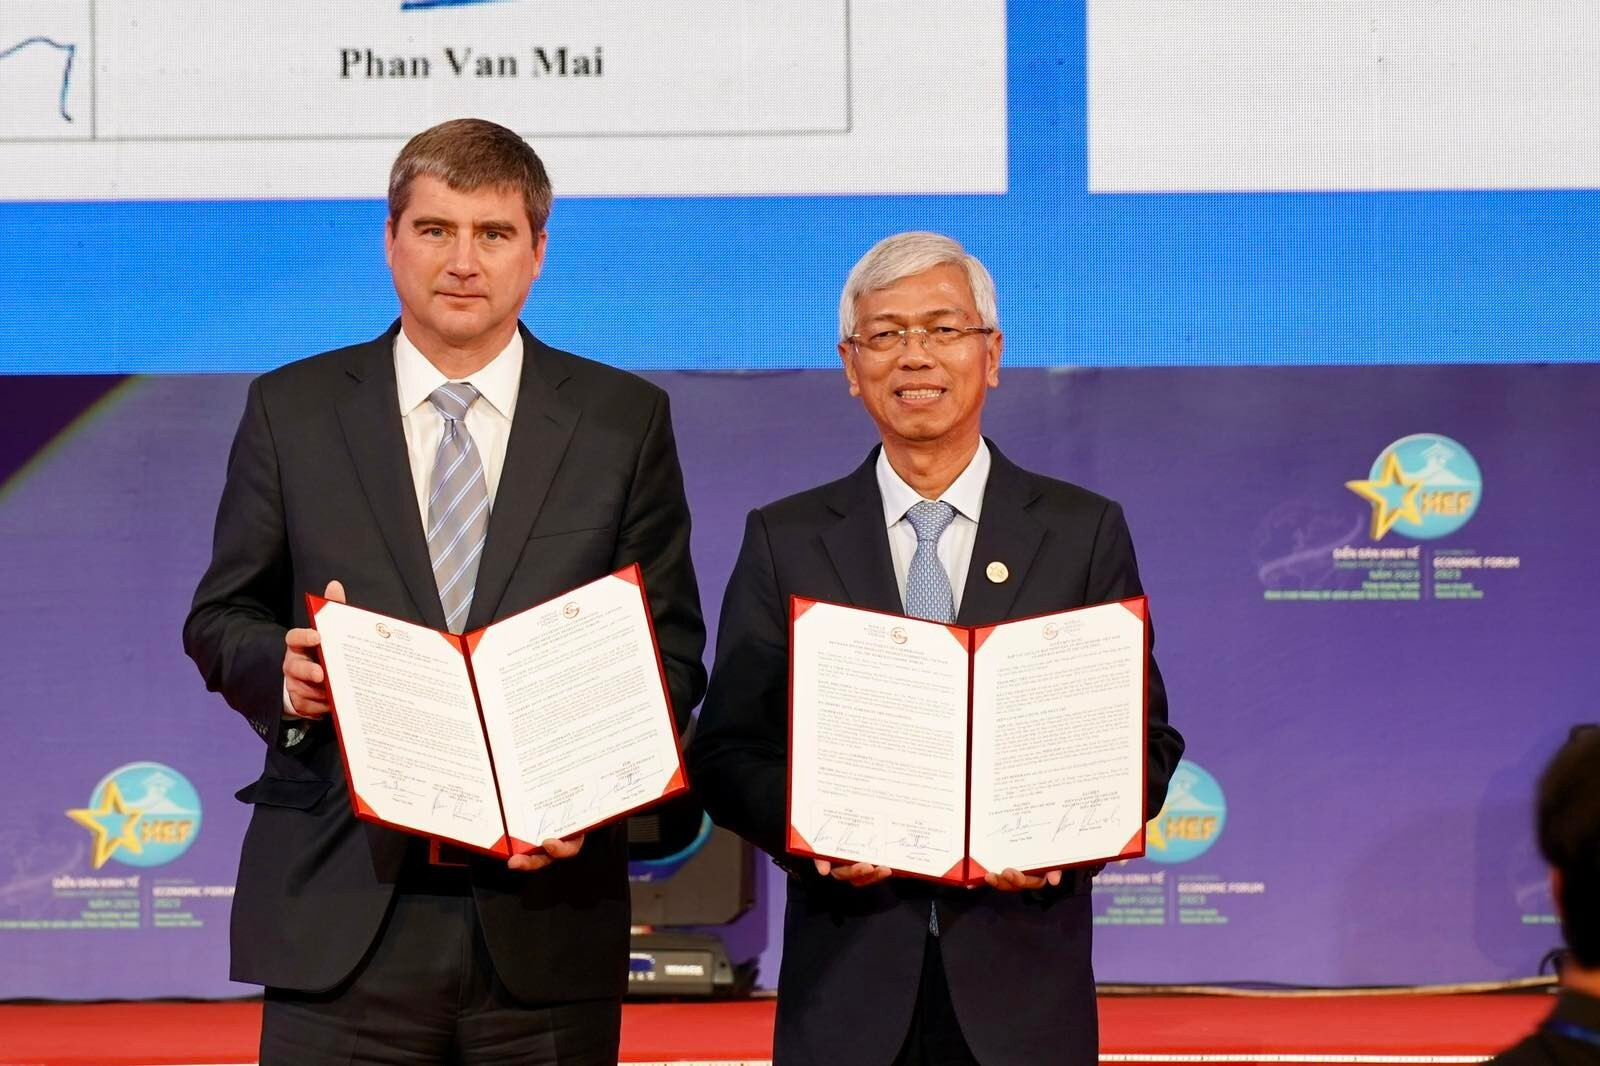 Phó Chủ tịch UBND TP.HCM Võ Văn Hoan và Giám đốc điều hành Diễn đàn Kinh tế Thế giới Jeremy Jurgens trao bản Tuyên bố chung giữa hai bên. (Ảnh: Hoàng Hùng)